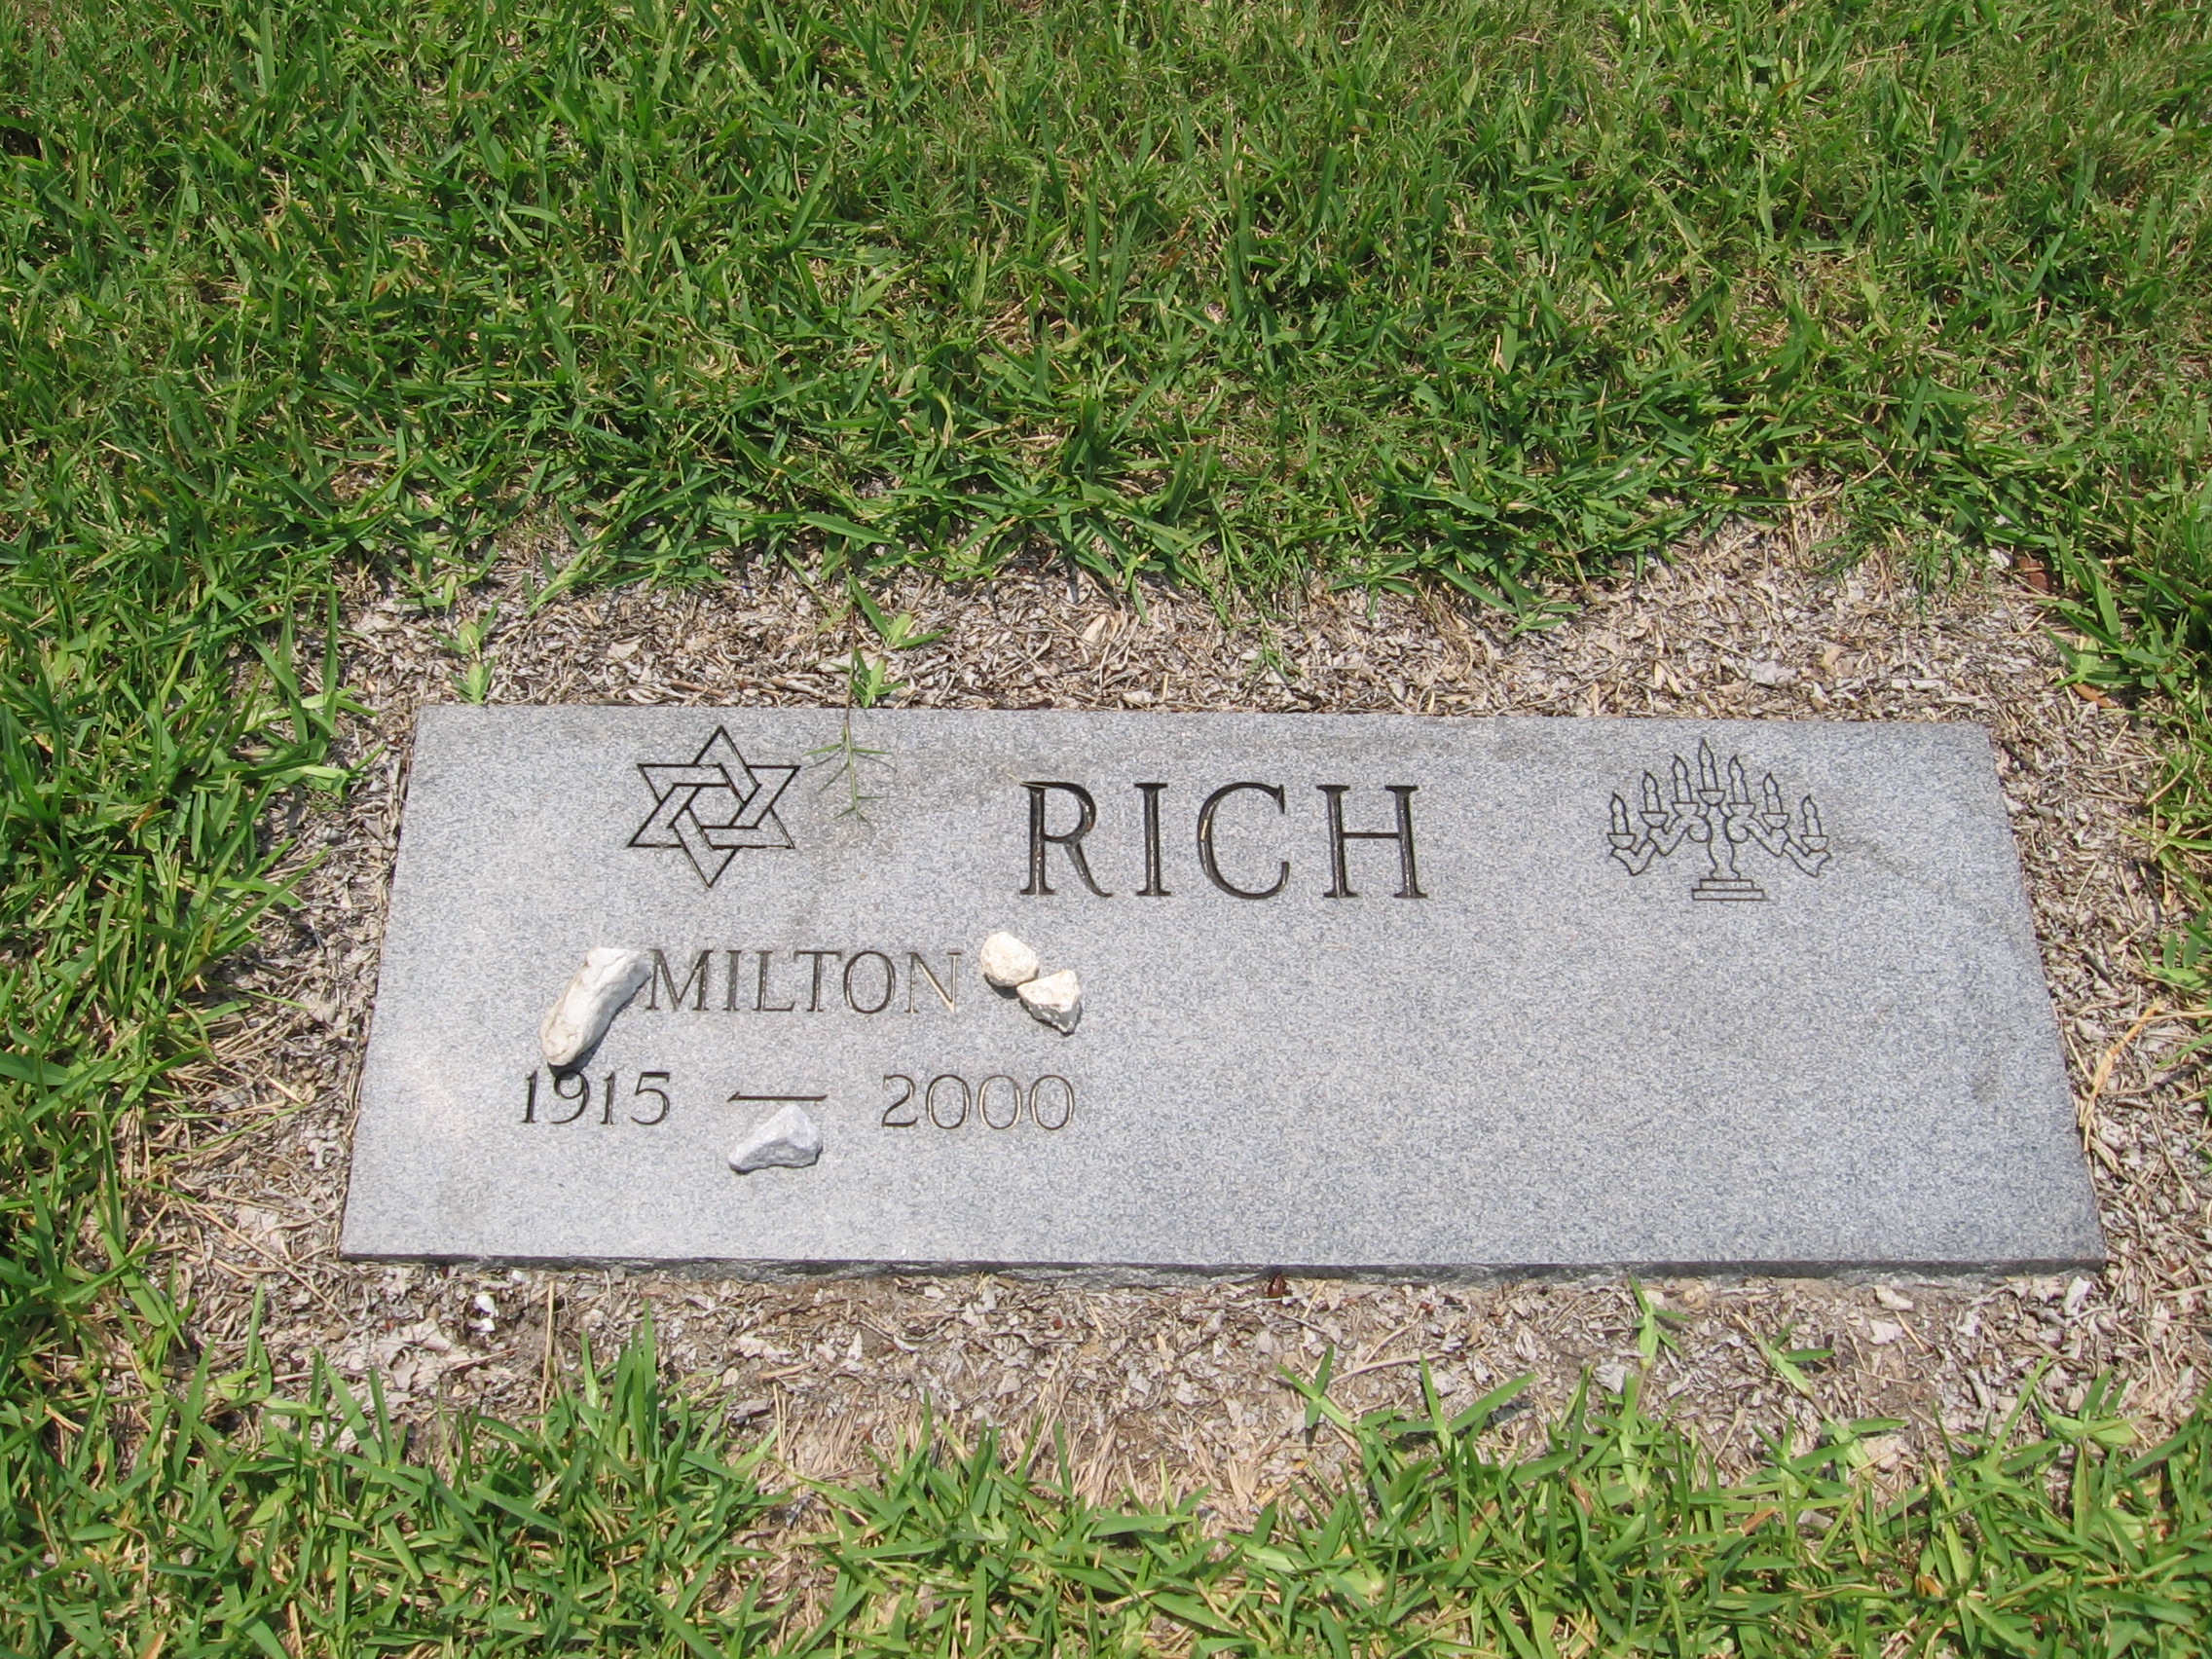 Milton Rich